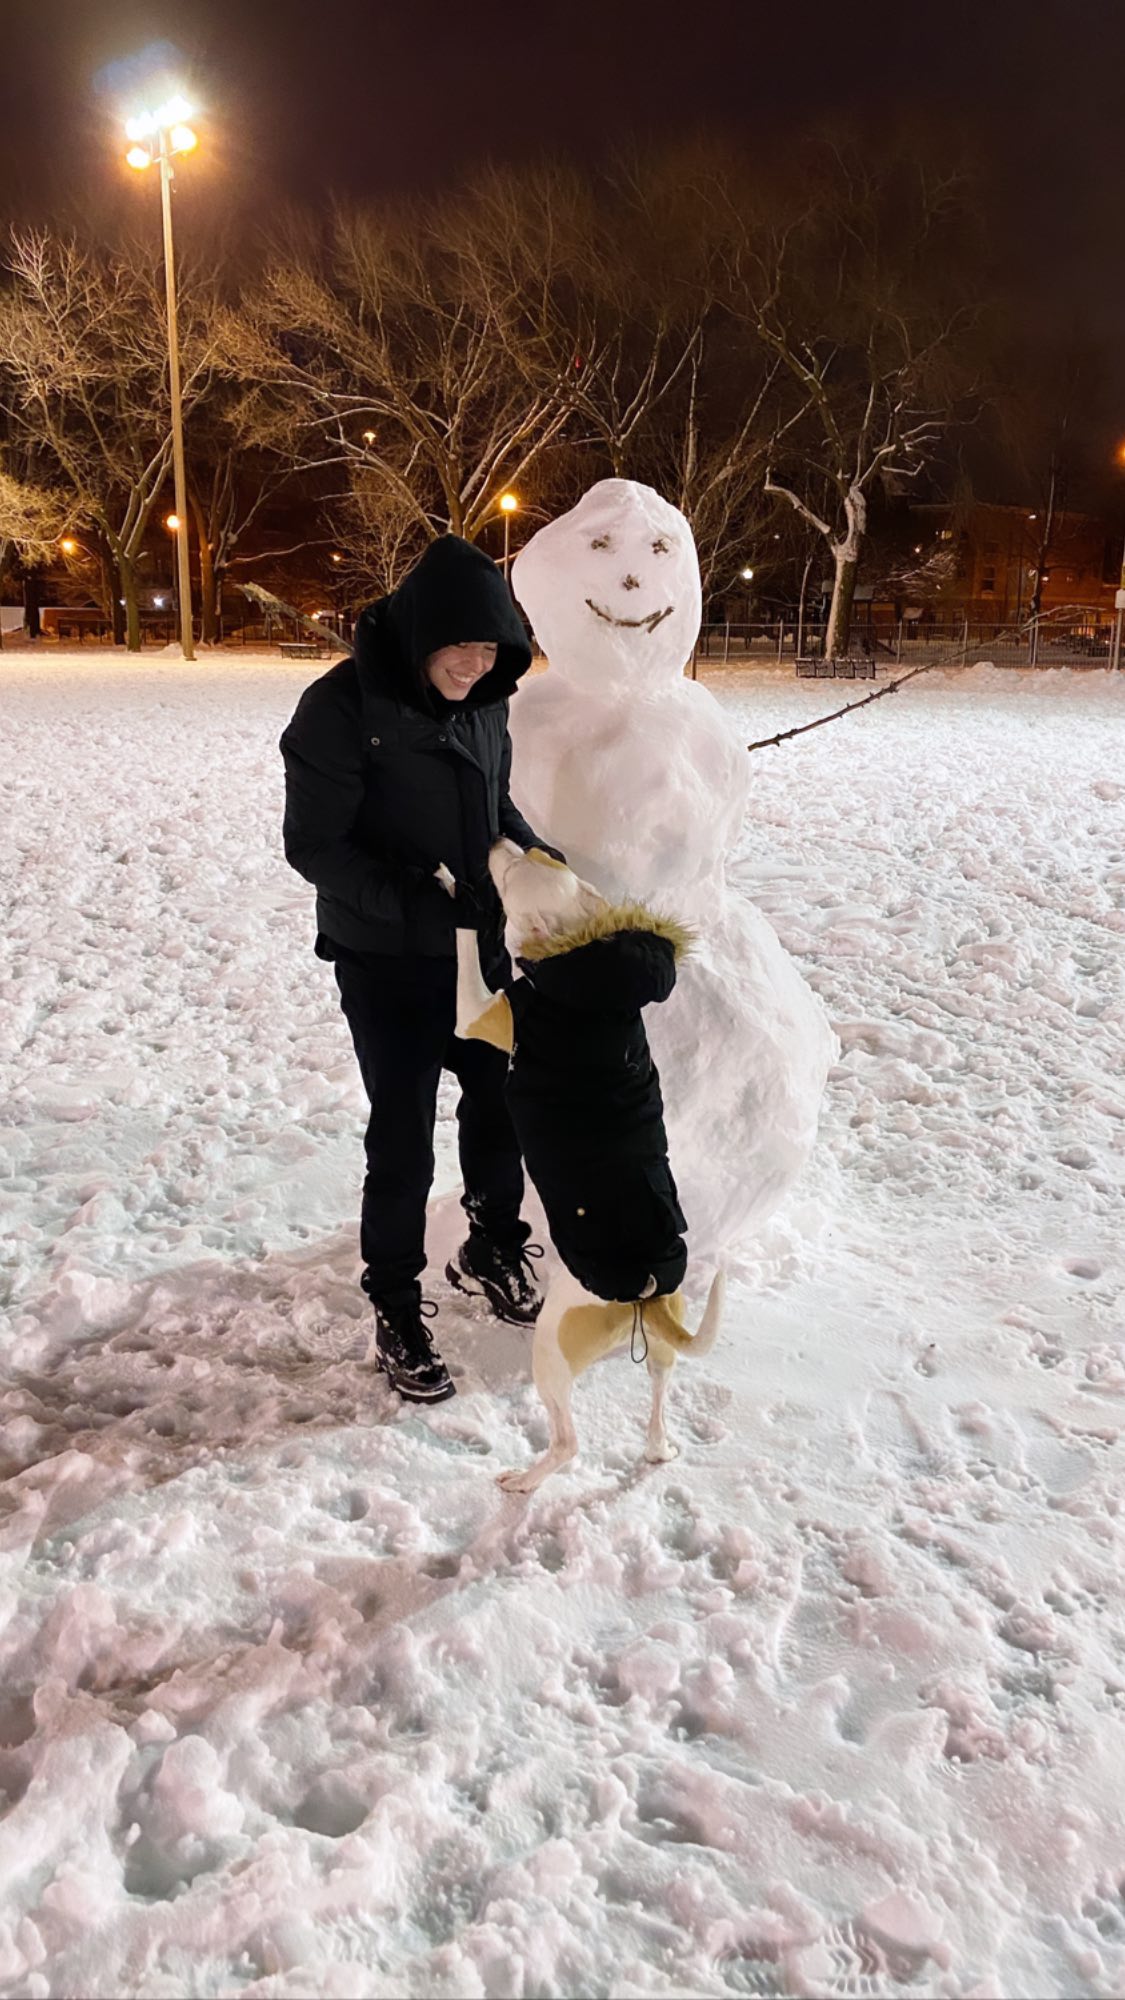 PHOTOS Sydney Sweeney construit une arme de bonhommes de neige! - Photo 4